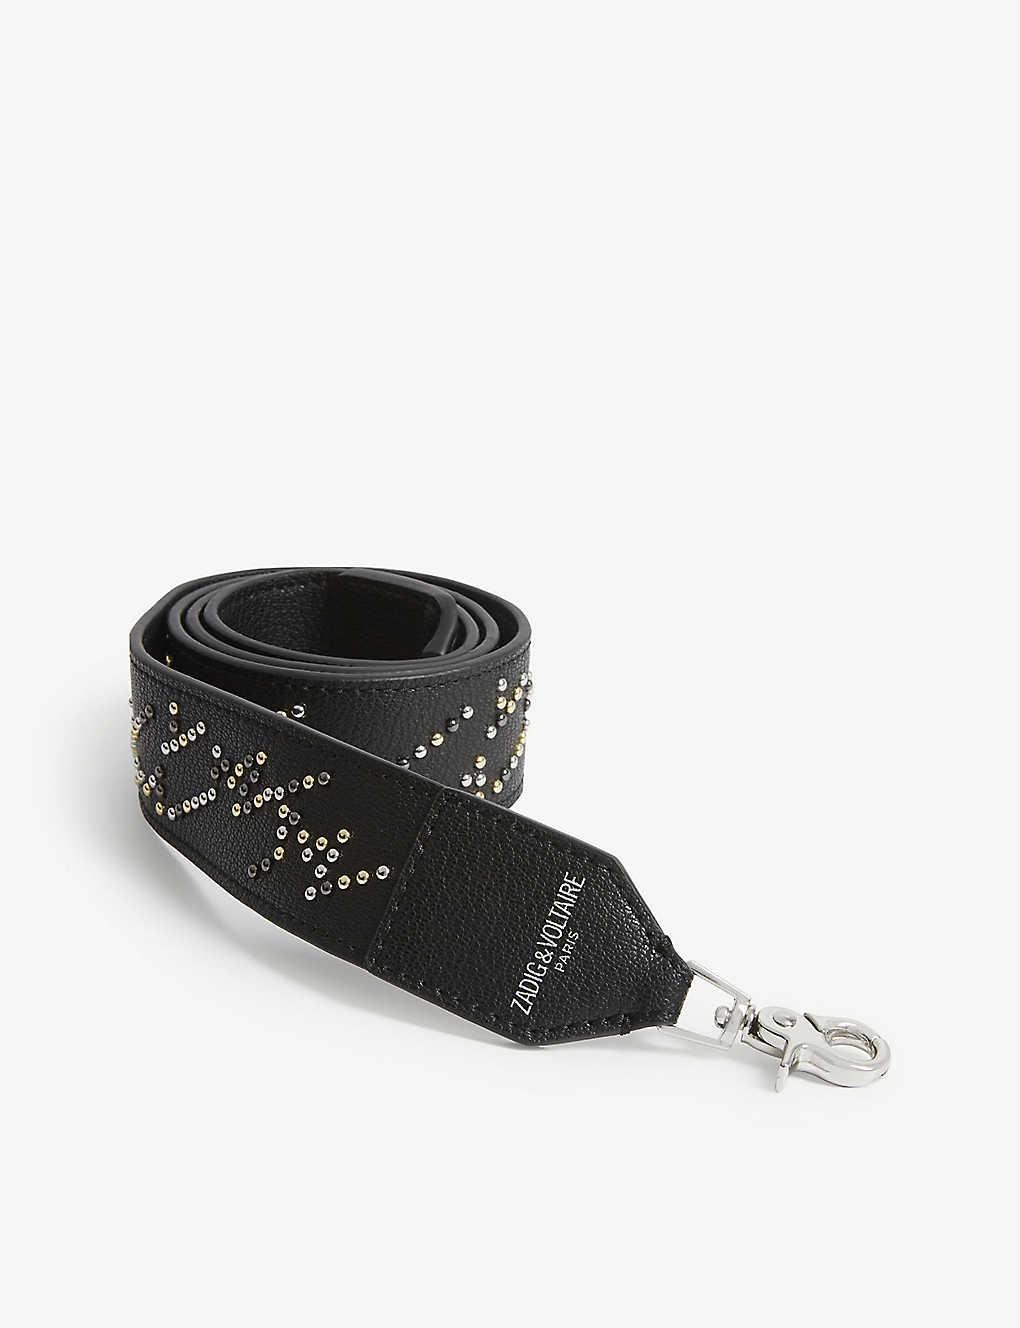 Zadig&Voltaire stud-detail leather bag strap Black